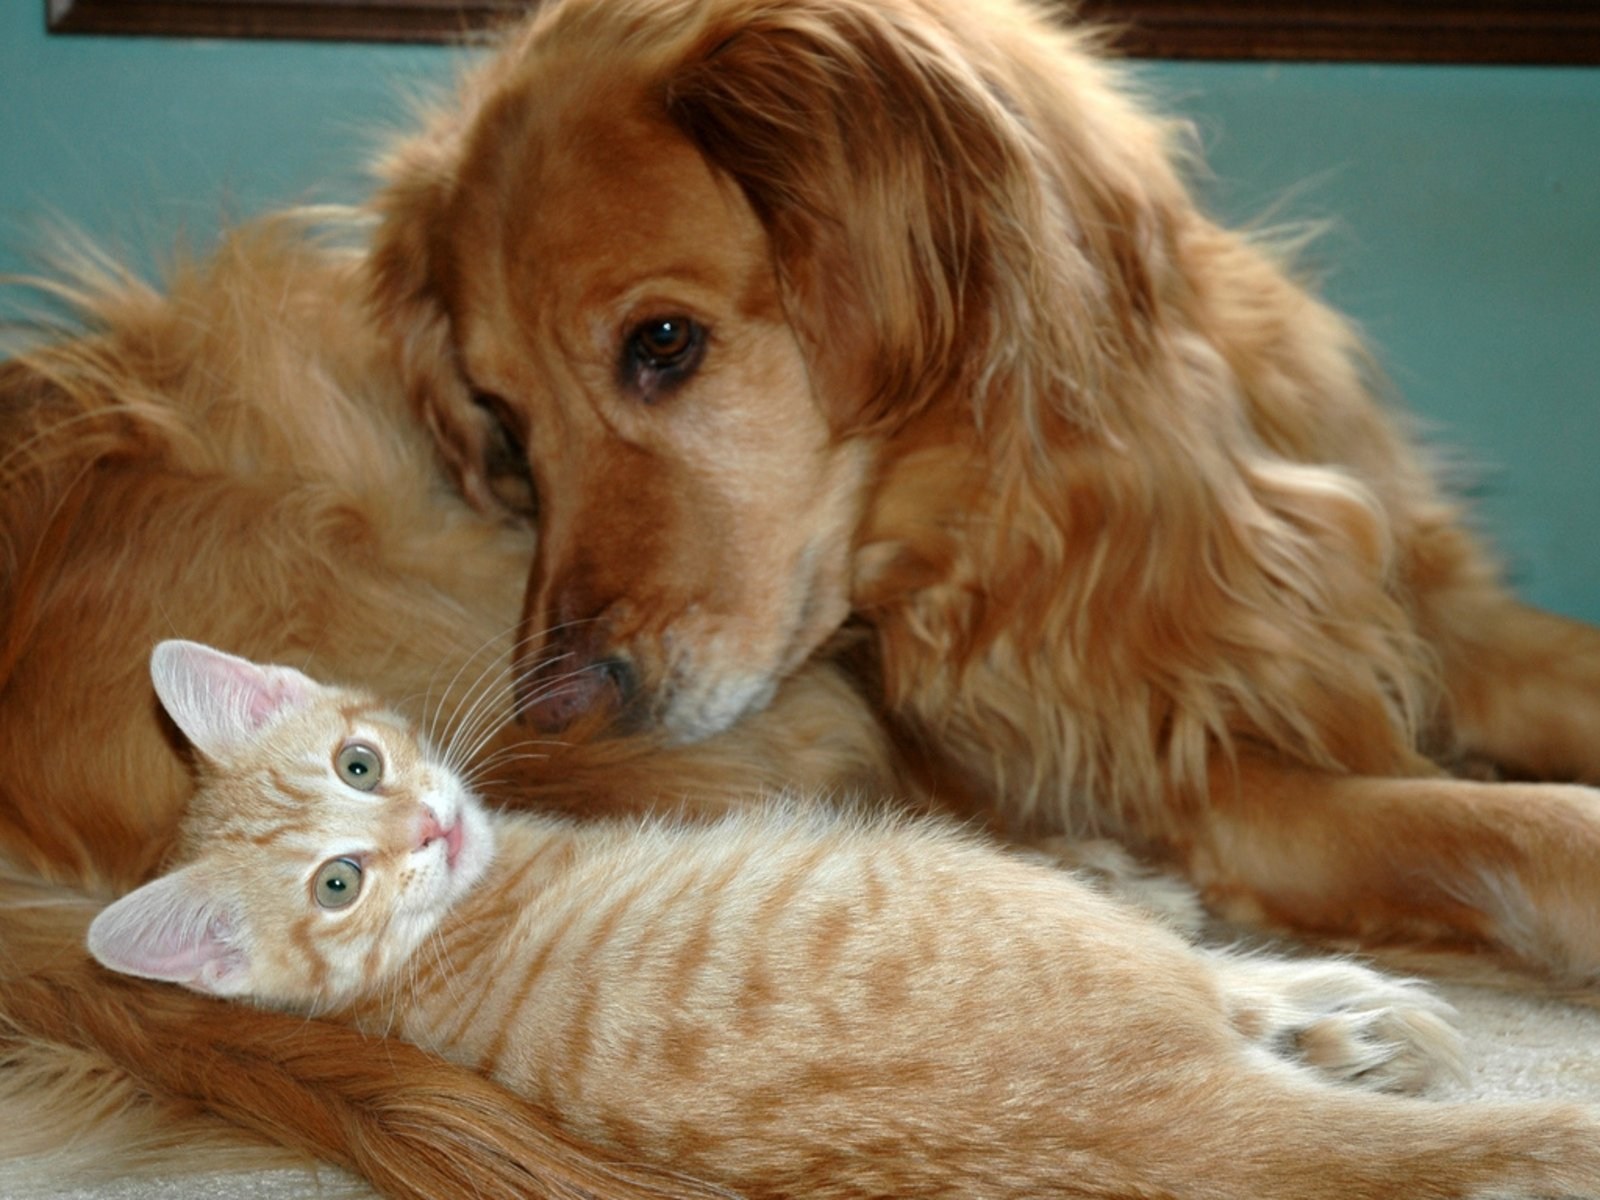 Породы животных кошек и собак. Кошки и собаки. Картинки кошек и собак. Rjireb b CJ,FRB. Собака и кошка вместе.